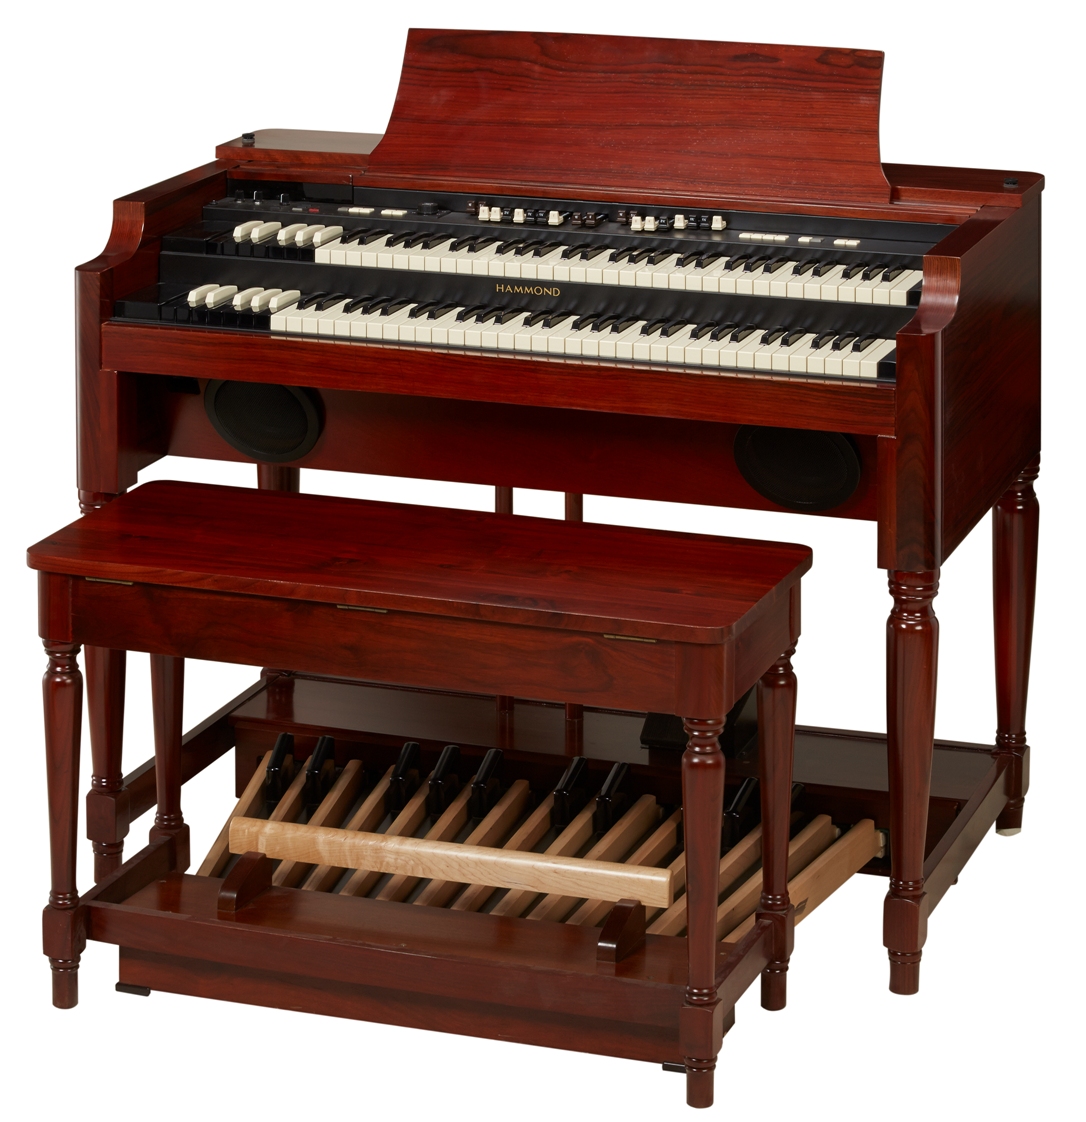 The New Hammond B-162 Console Organ